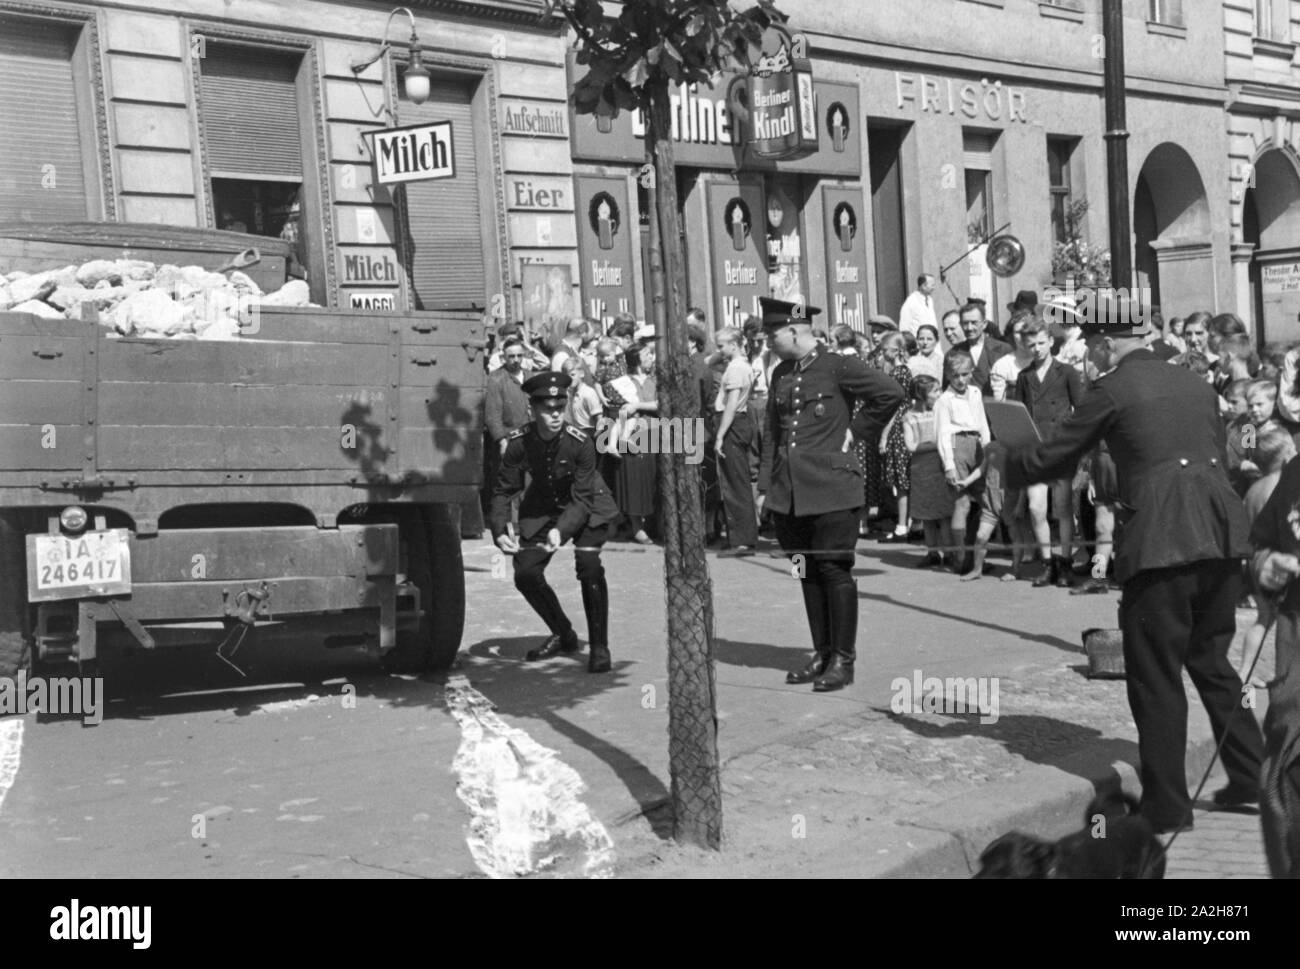 Polizisten rekonstruieren einen Verkehrsunfall, Deutschland 1930er Jahre. Policemen reconstructing a traffic accident, Germany 1930s. Stock Photo